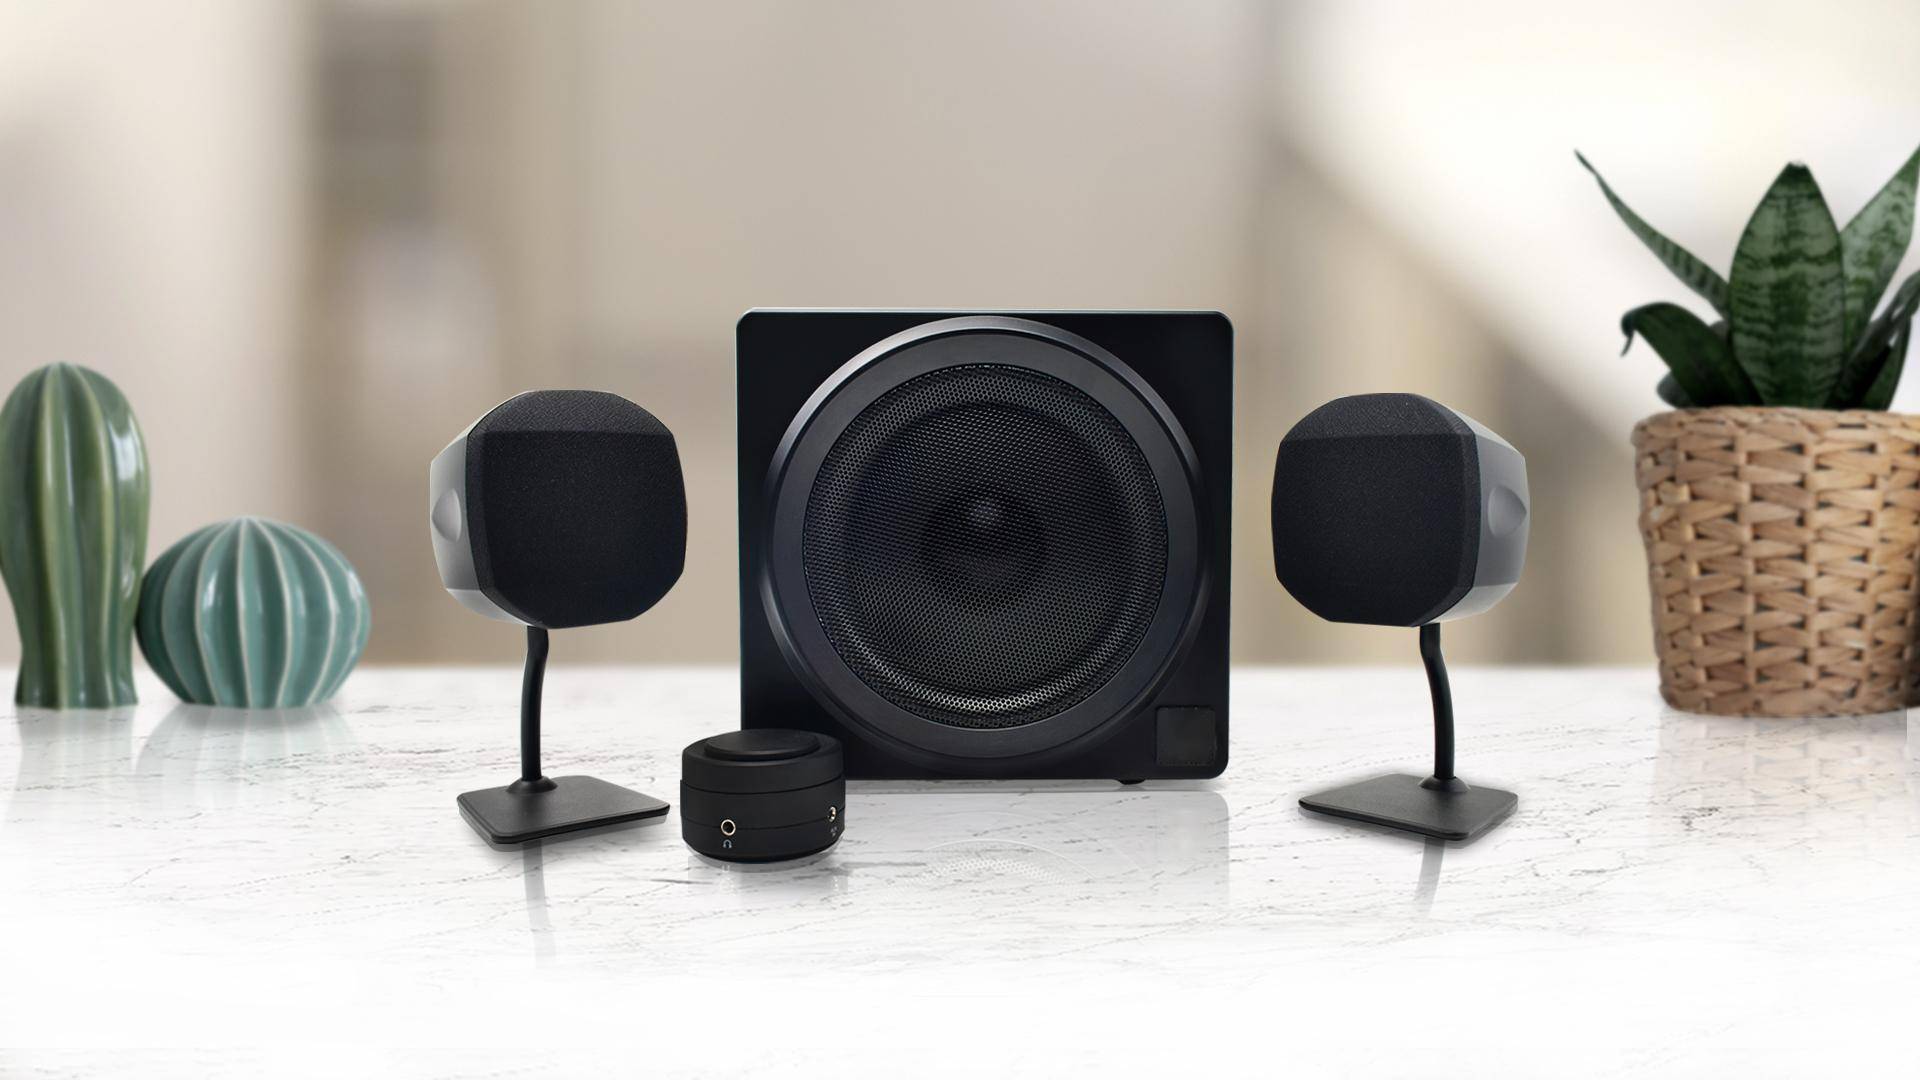 HSUB2.1 Bluetooth Multi-Media Speakers Set Home Audio